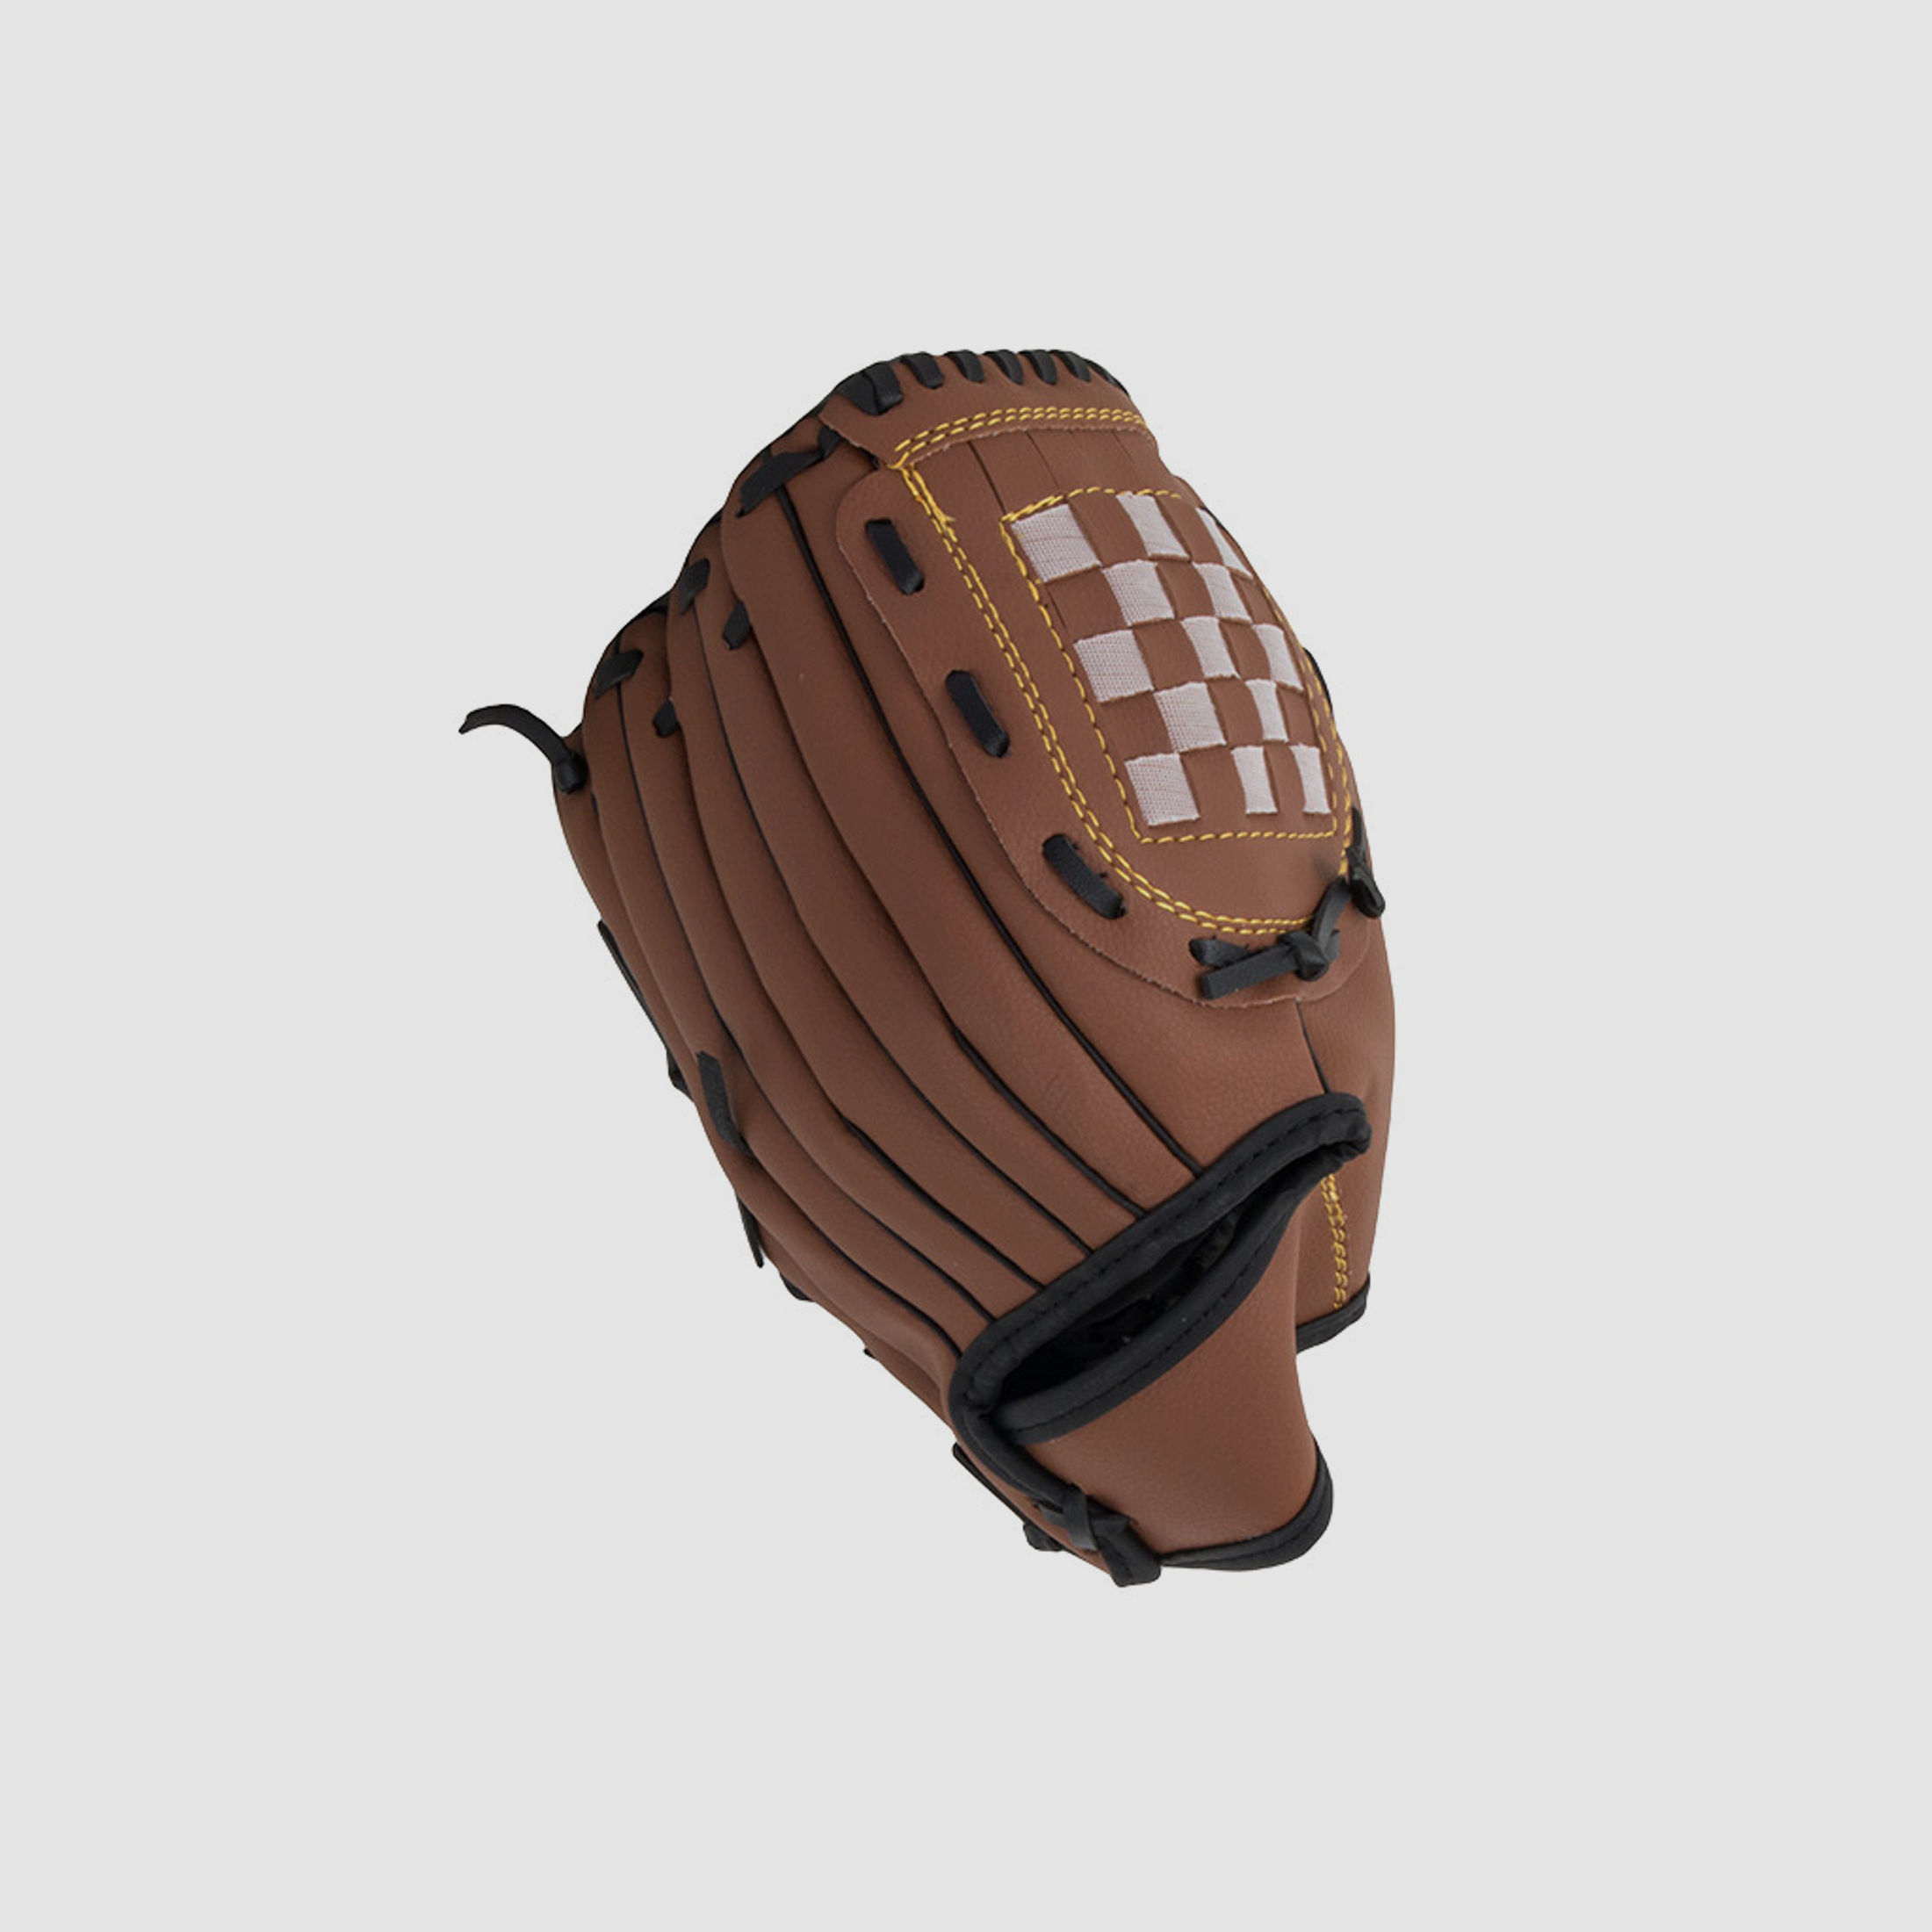 Baseball Handschuh Softball Handschuh grĂ¶Ăźe 10,5 Zoll inklusive Ball 7,2 cm